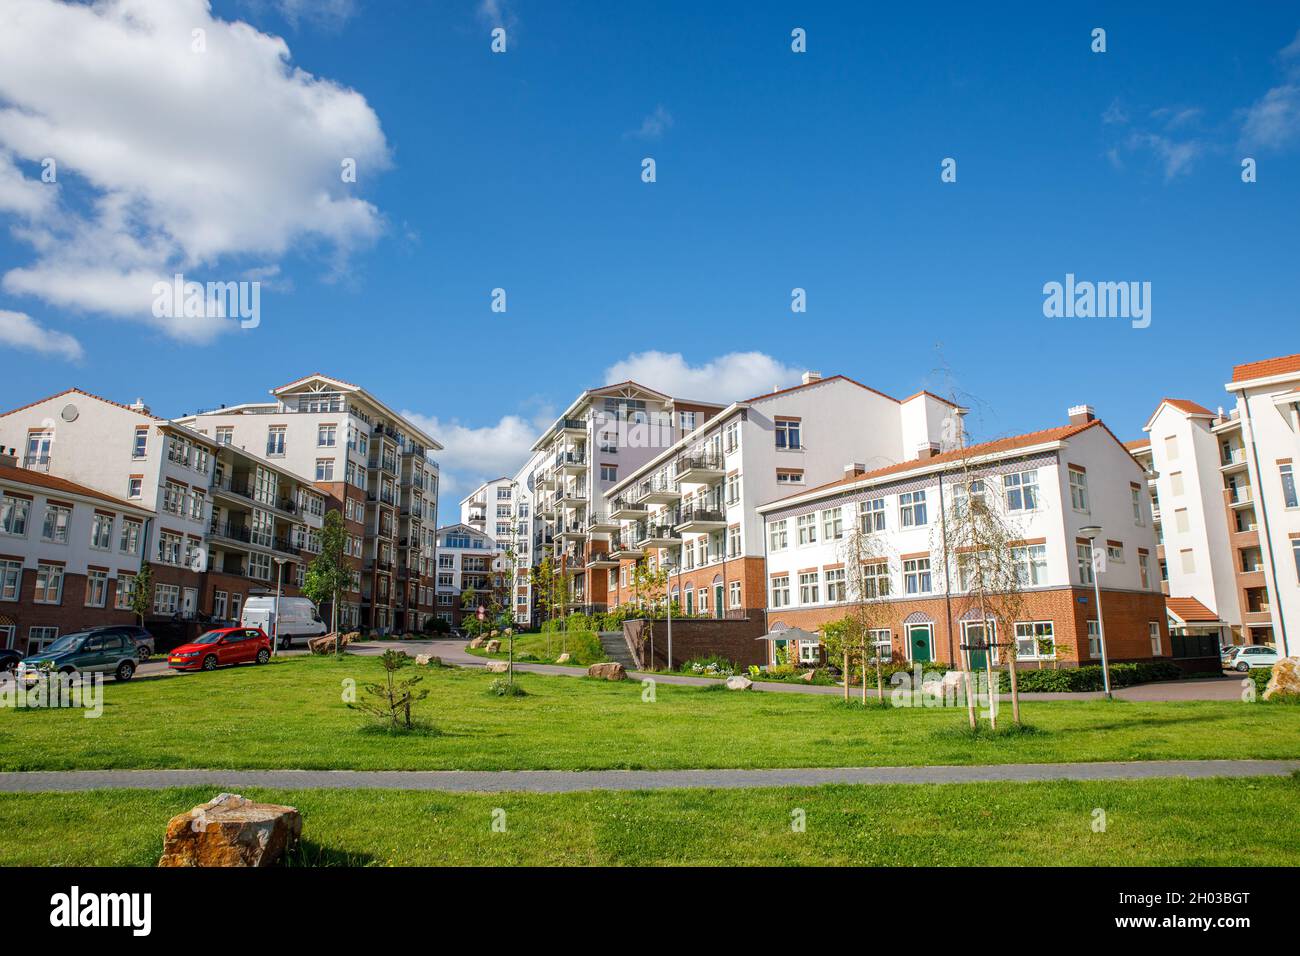 Apartmentkomplex 'De Bloem' im südholländischen Dorf Rijnsburg in den Niederlanden. An einem blau bewölkten Tag im Sommer. Bauen Sie in der Form eines Stockfoto